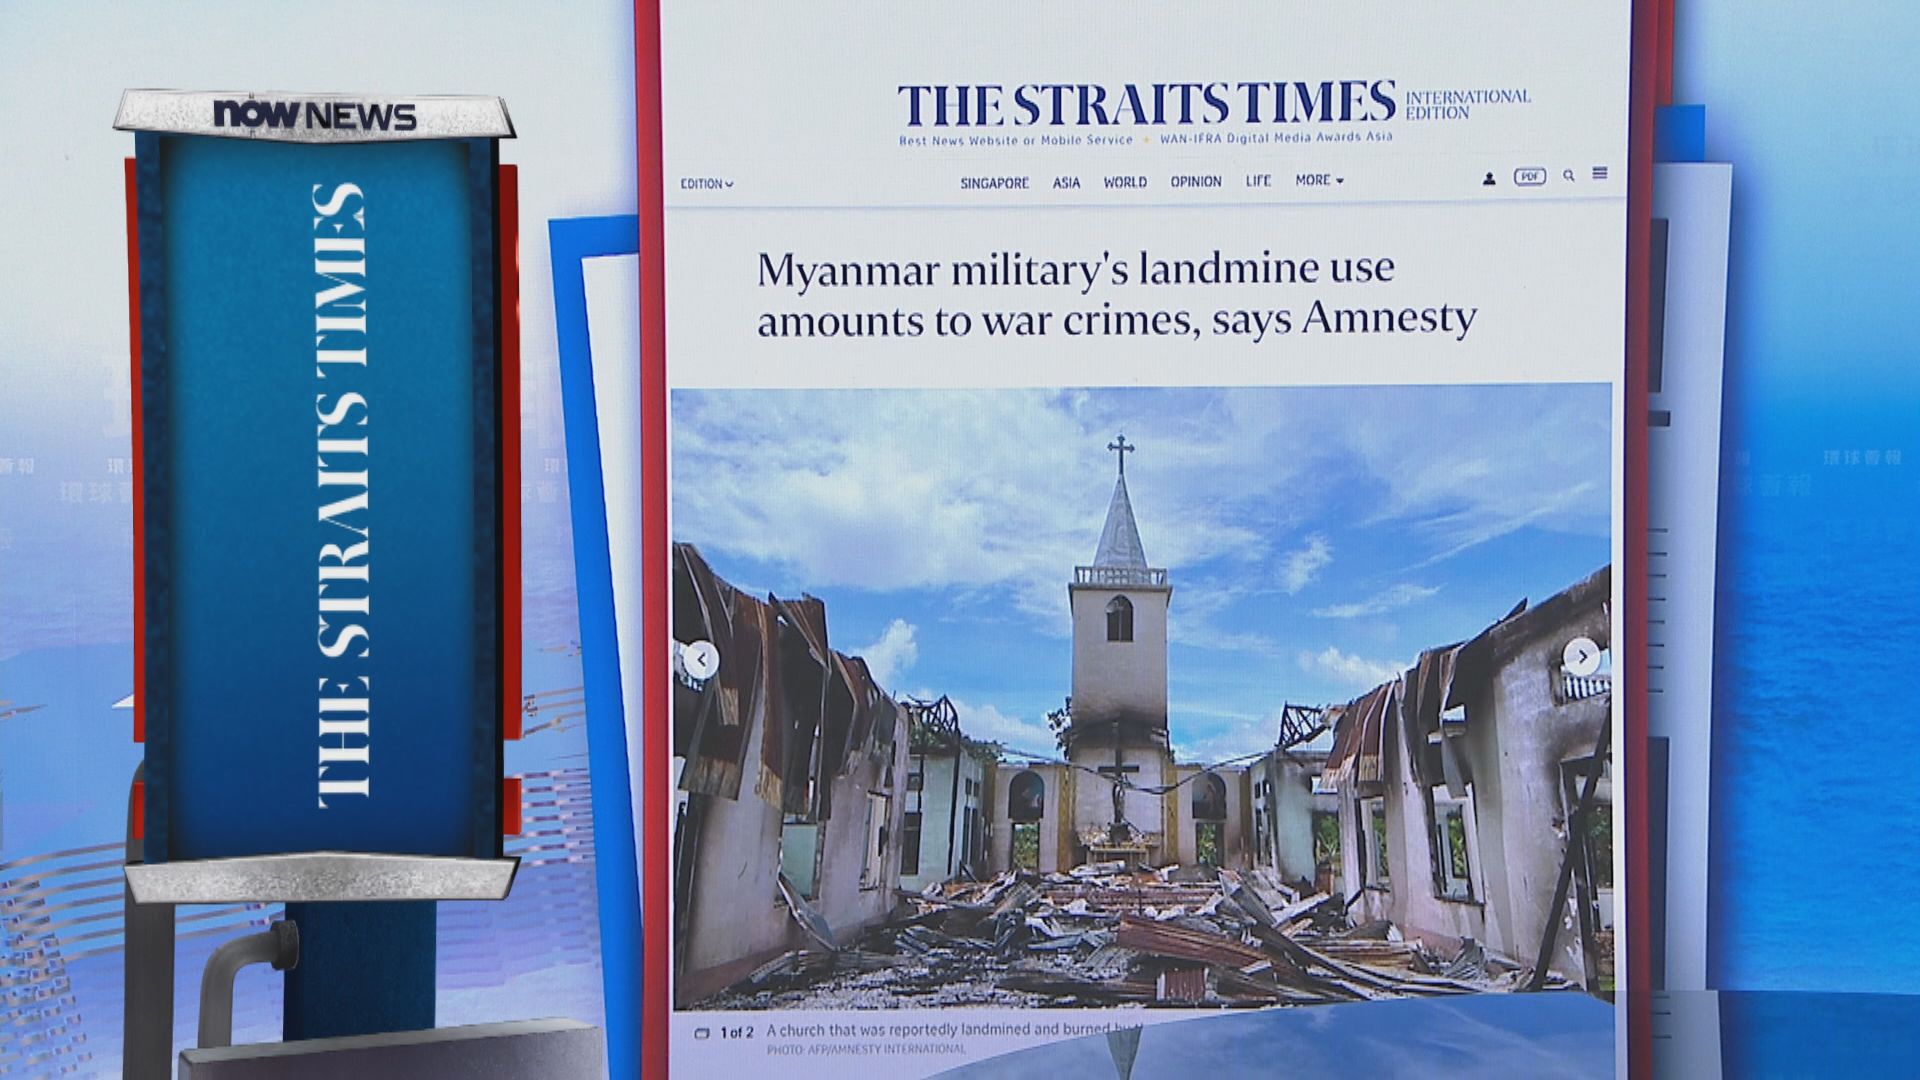 【環球薈報】報告指緬甸軍方以地雷對付反政變組織傷及平民